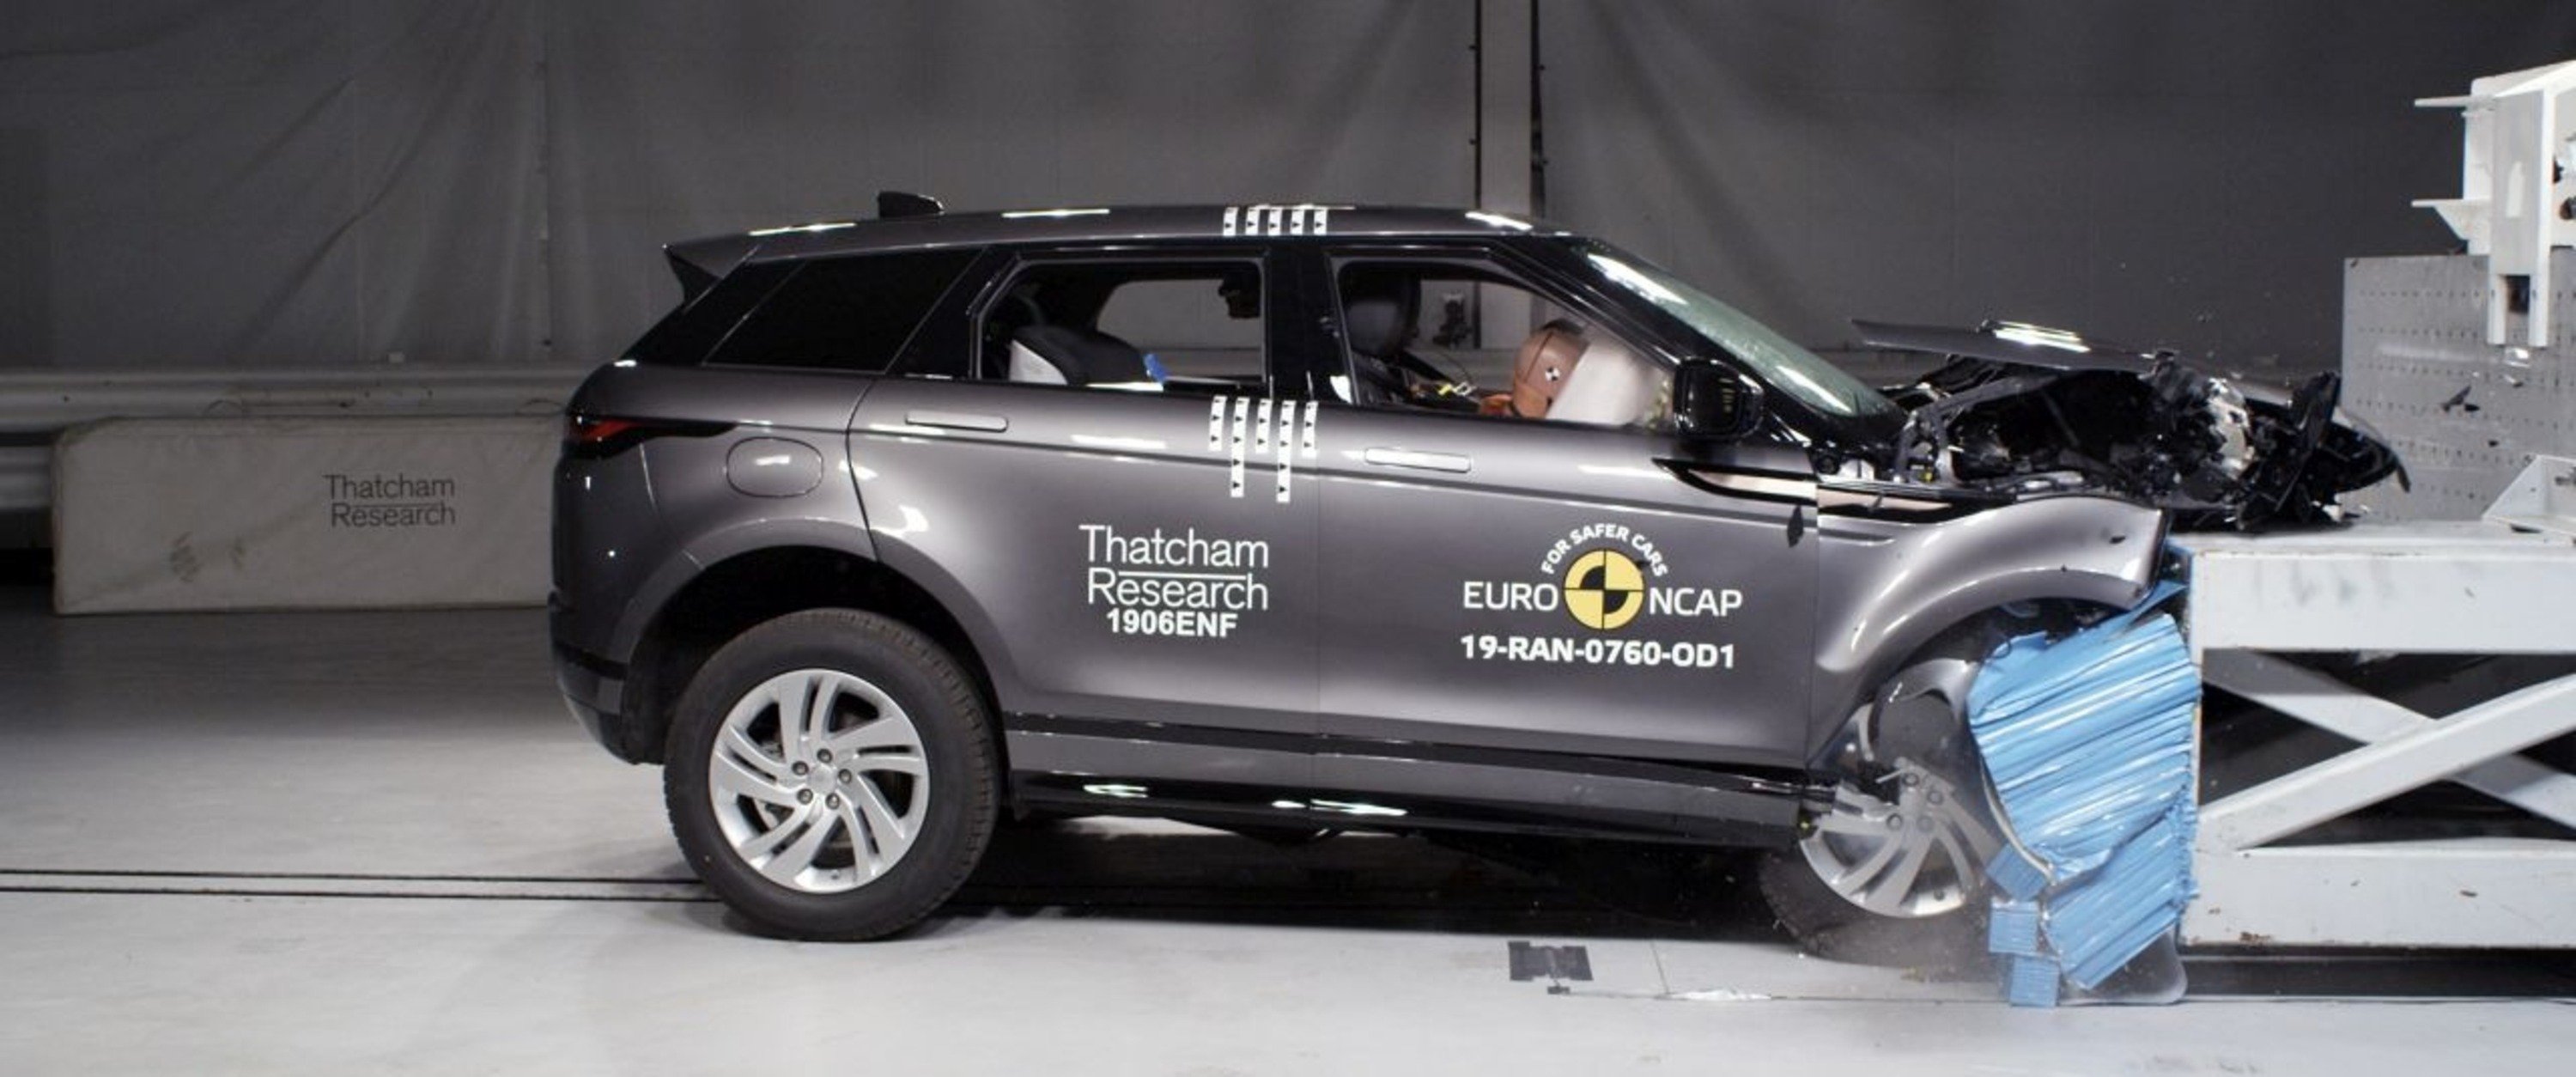 Euro NCAP: 5 stelle a Citroen C5 Aircross e nuova Range Rover Evoque